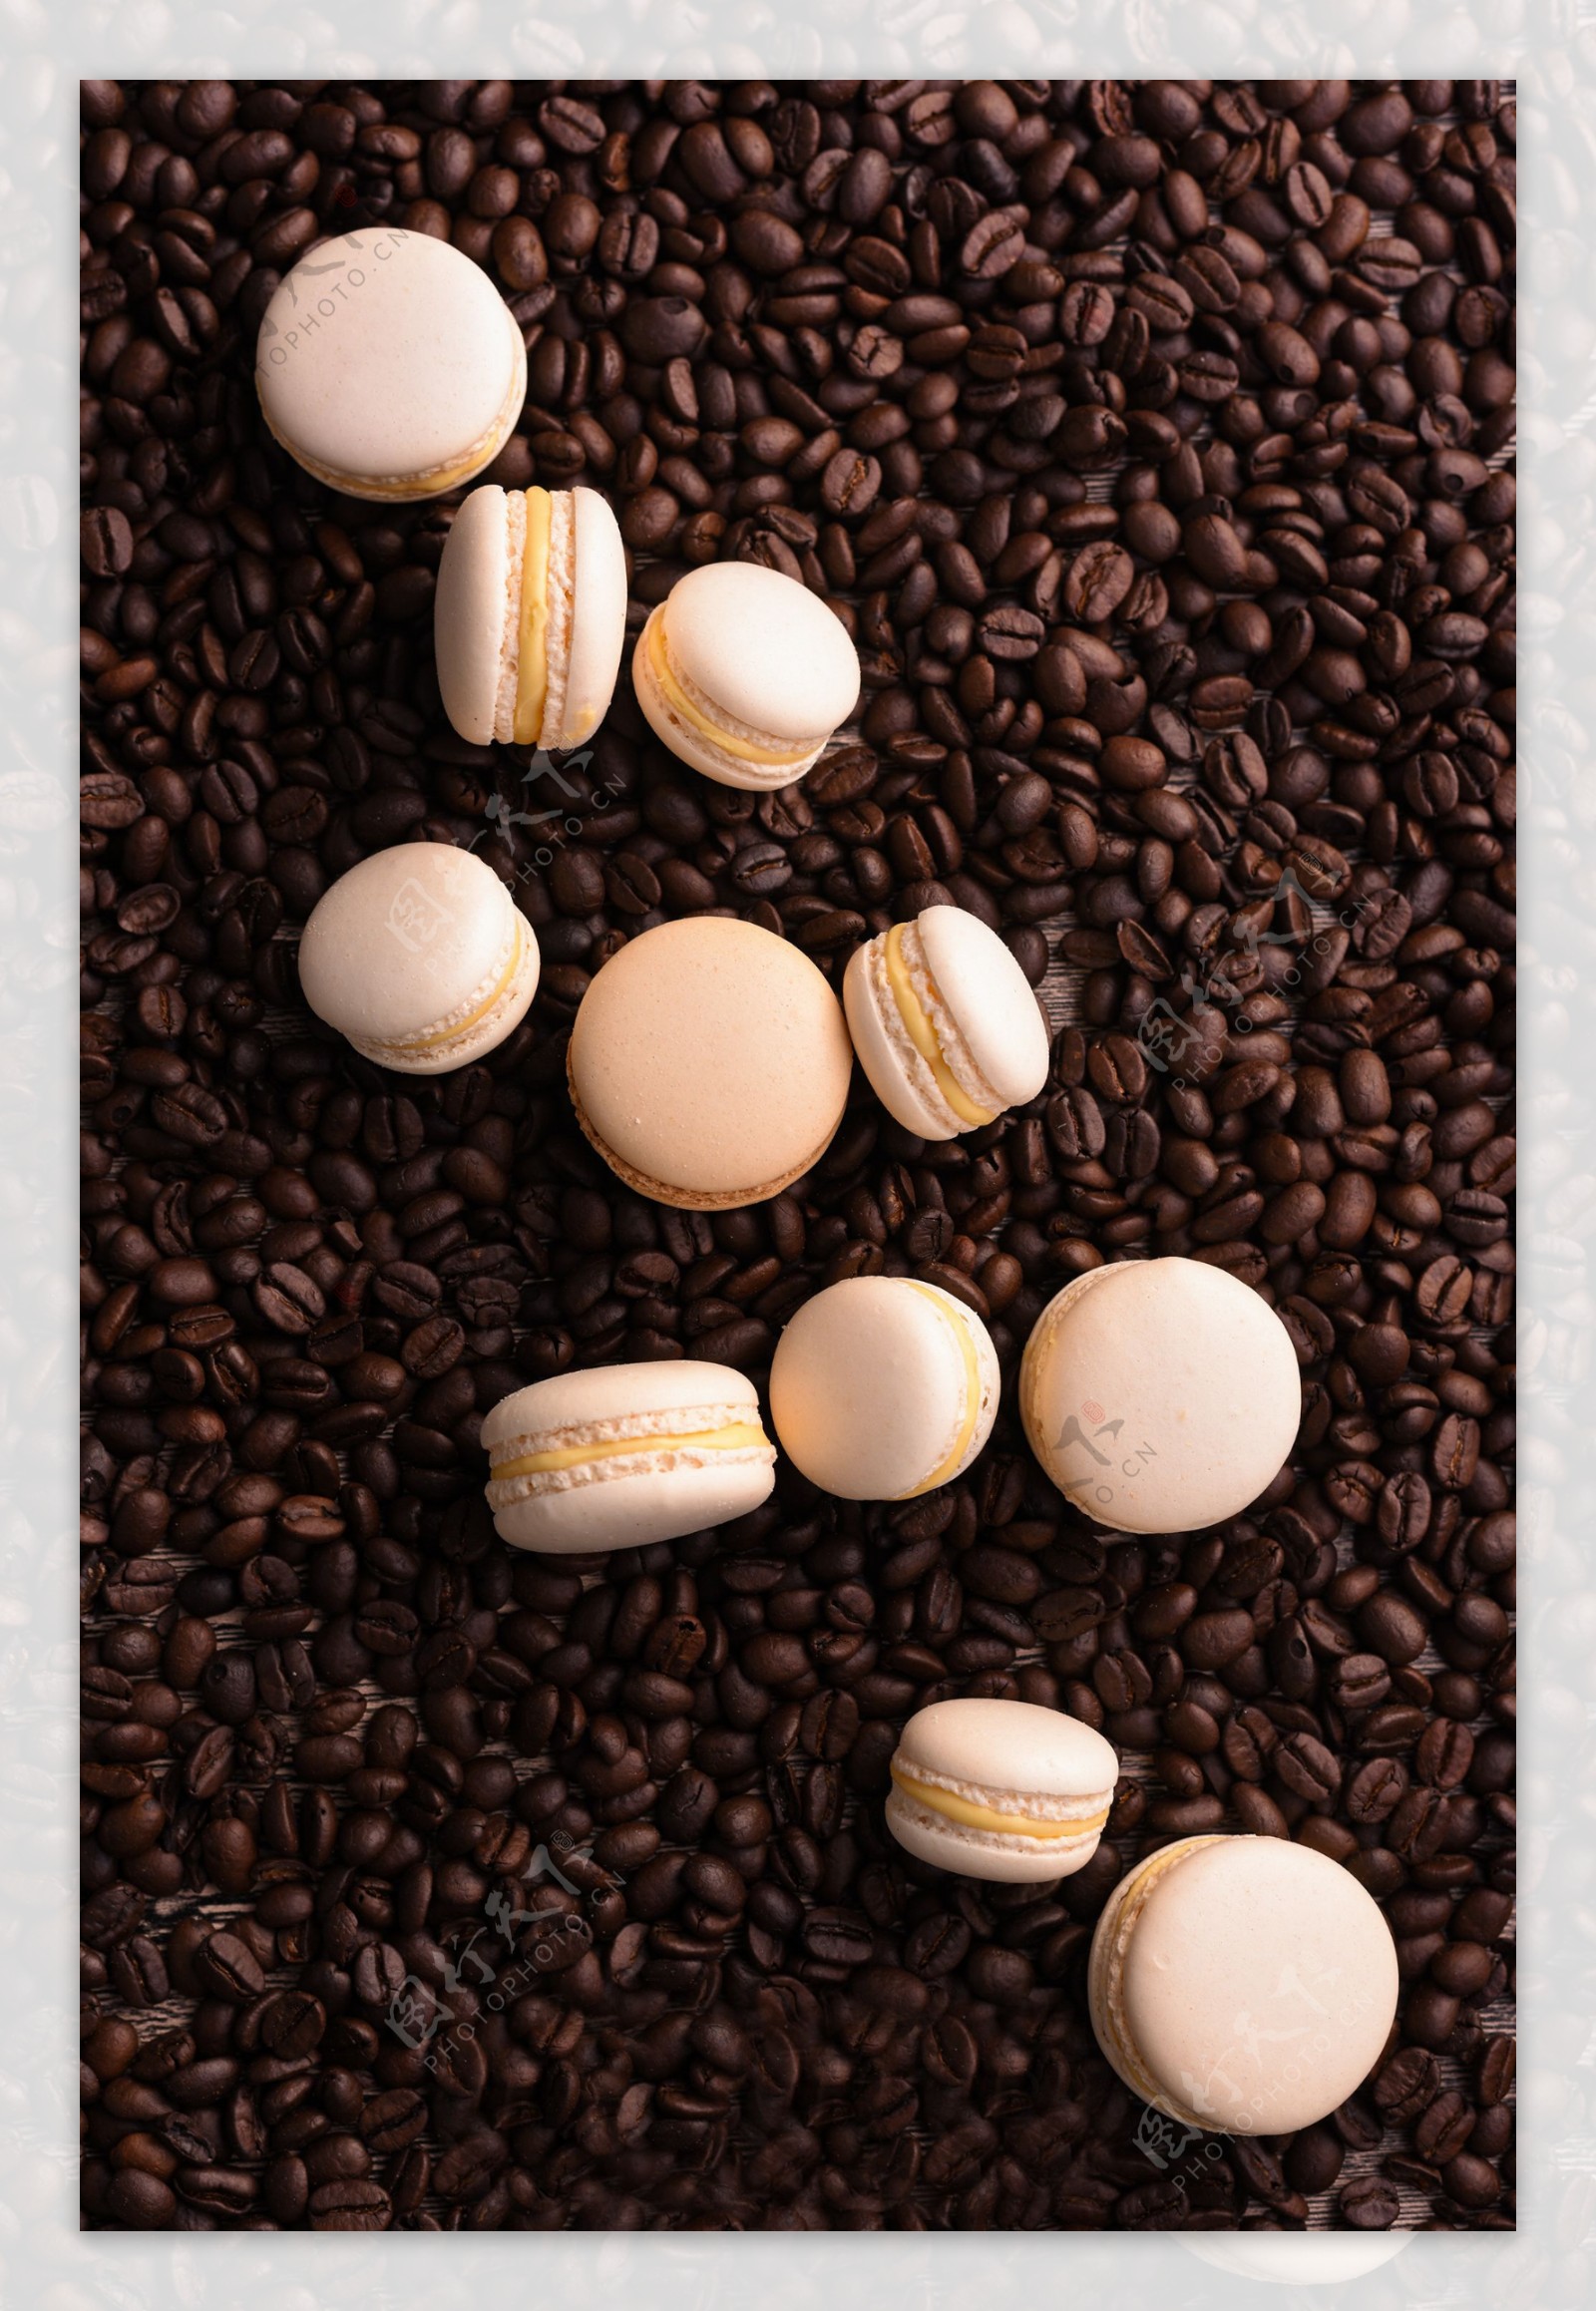 咖啡豆和马卡龙